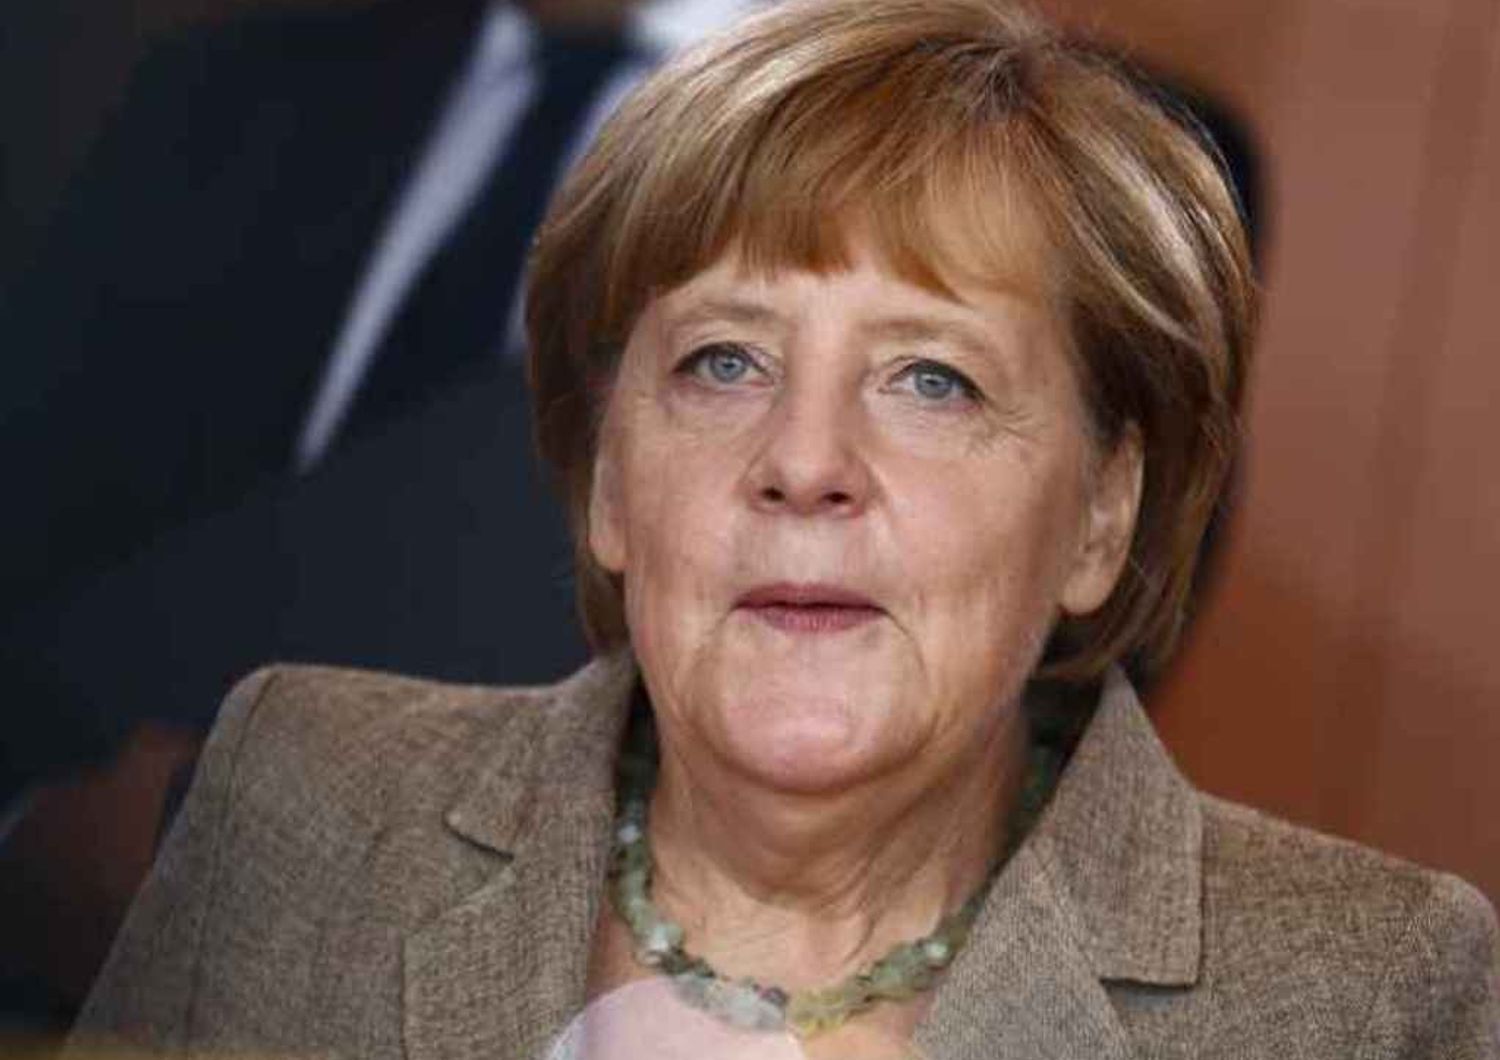 Francia si ribella a Patto Stabilita' Merkel gelida, "prendiamo atto"